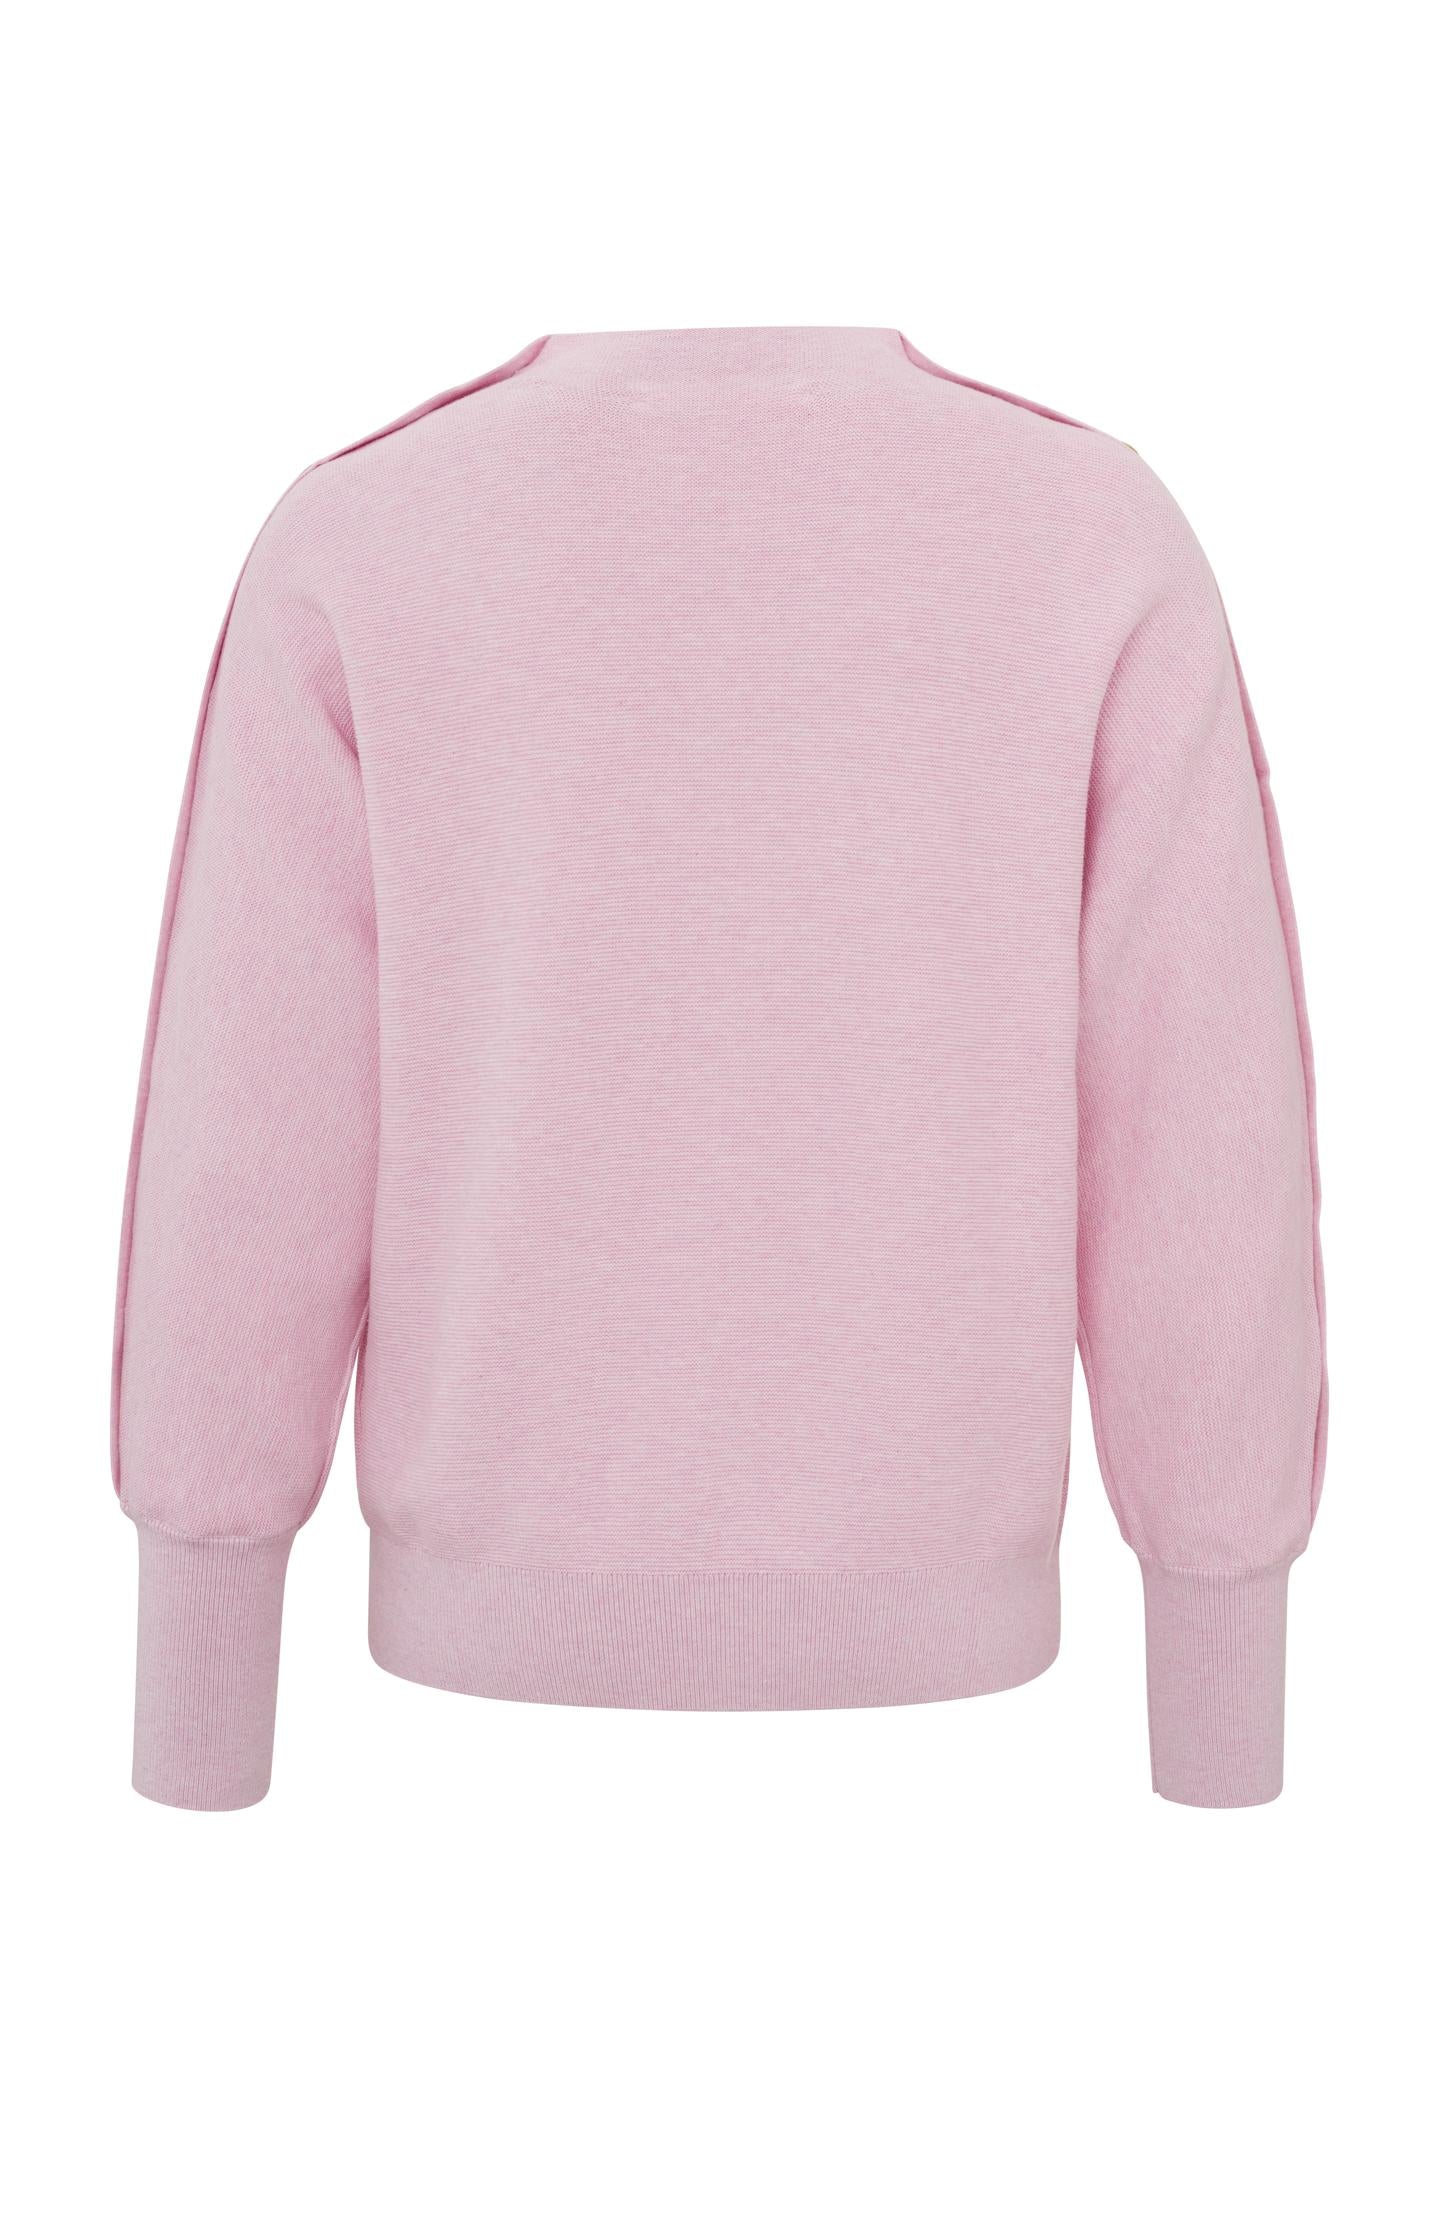 Boatneck Sweater in Lady Pink Melange